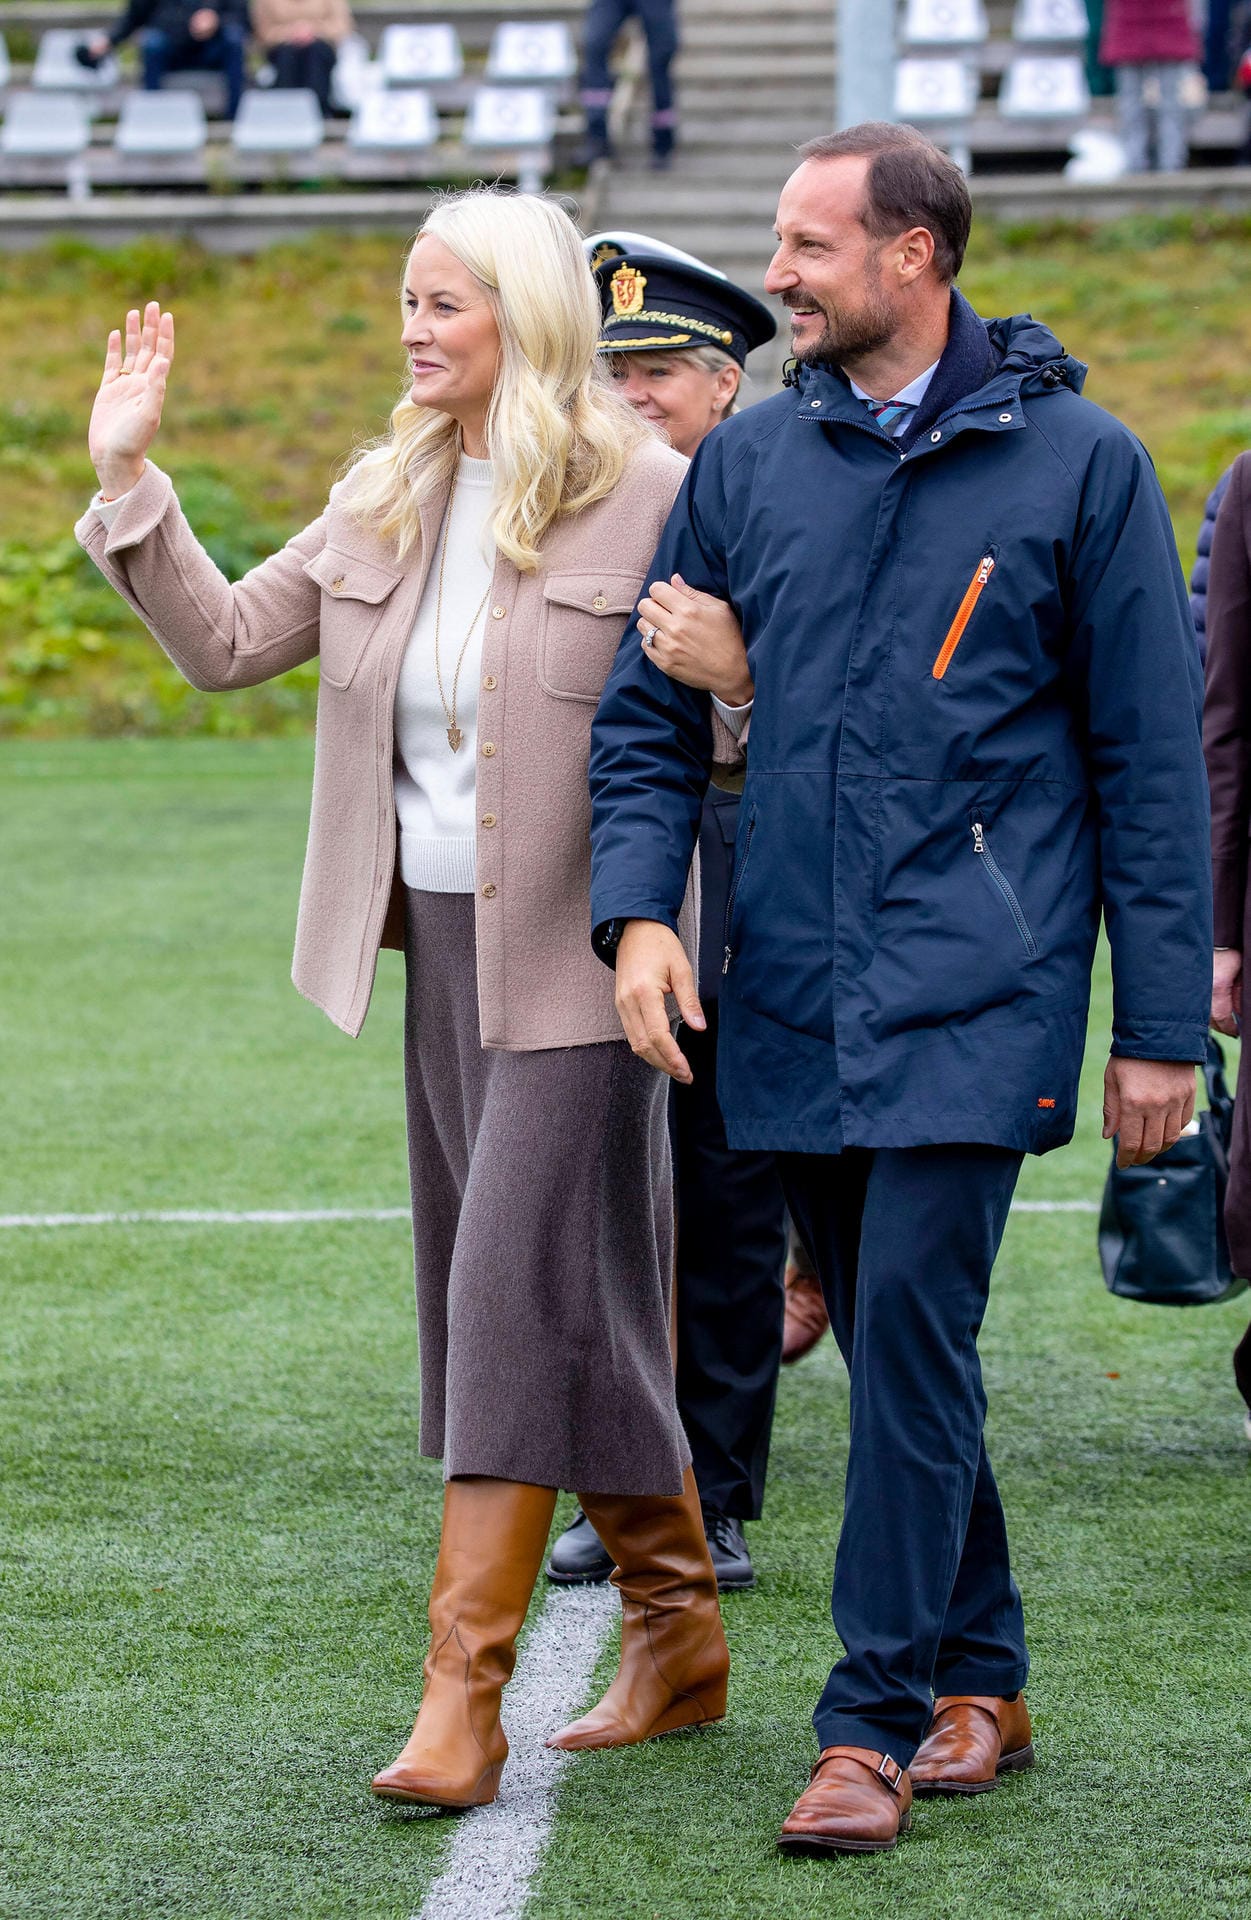 Dabei zeigen sich die norwegischen Royals total verliebt.